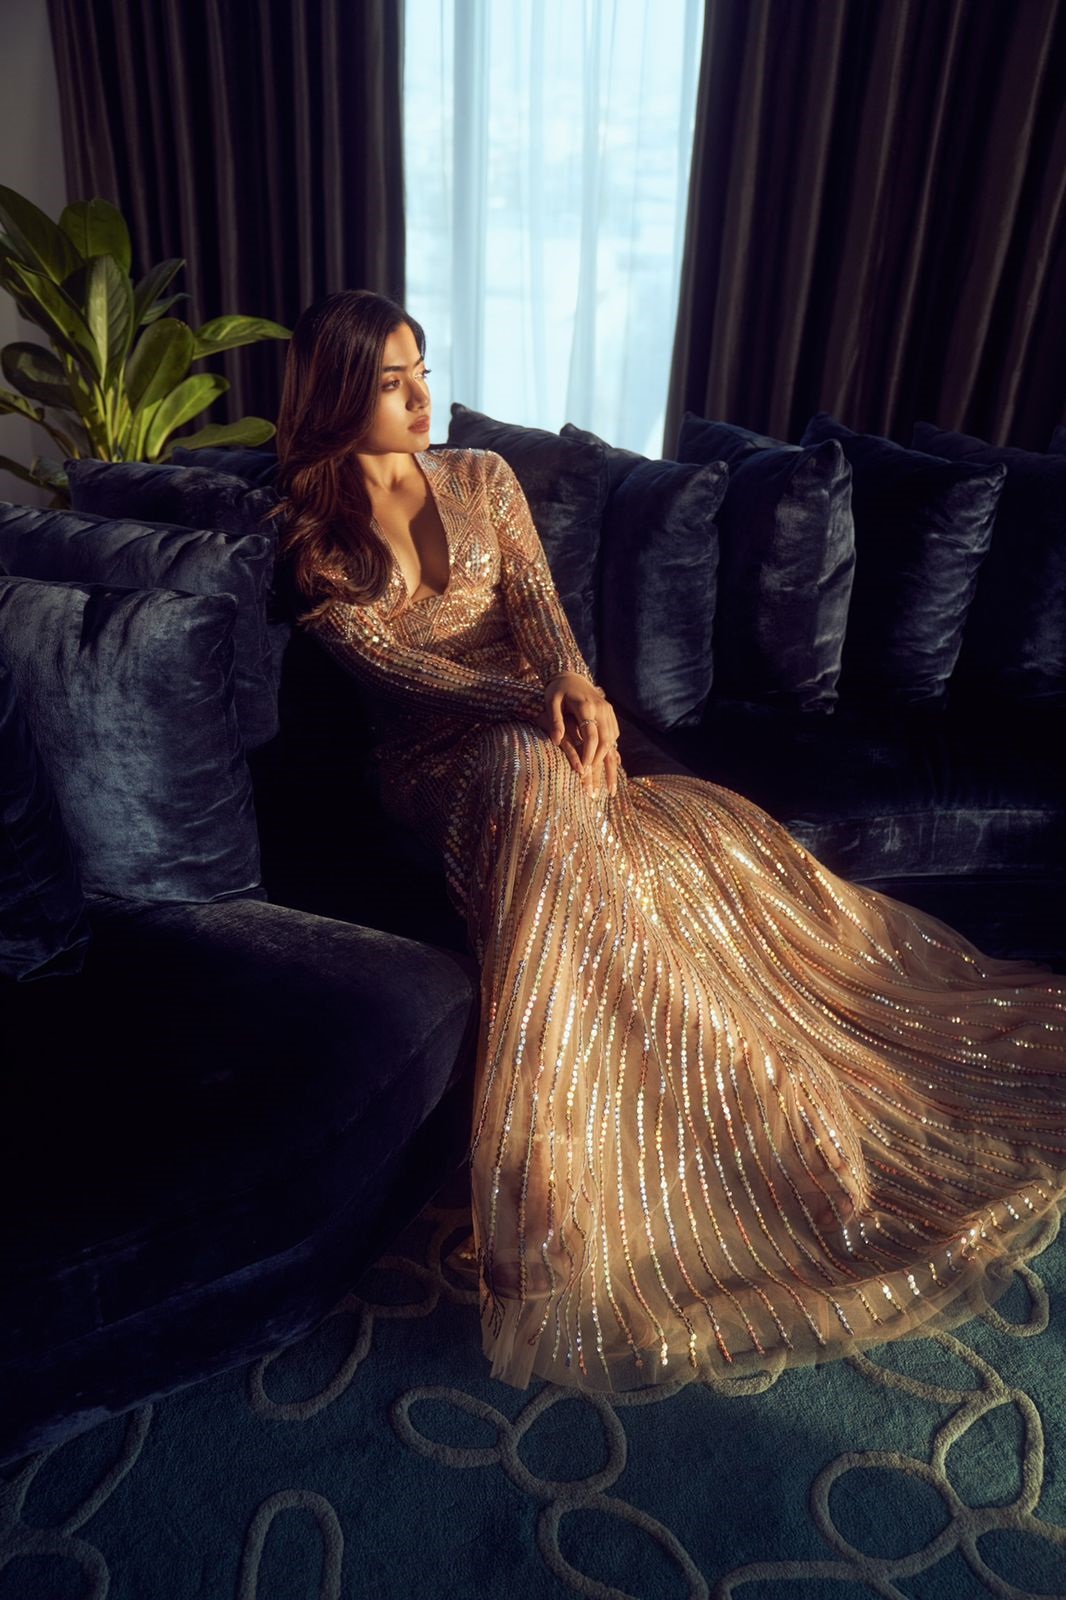 Kareena Kapoor dazzles in golden gown at Ralph Lauren event in Jaipur